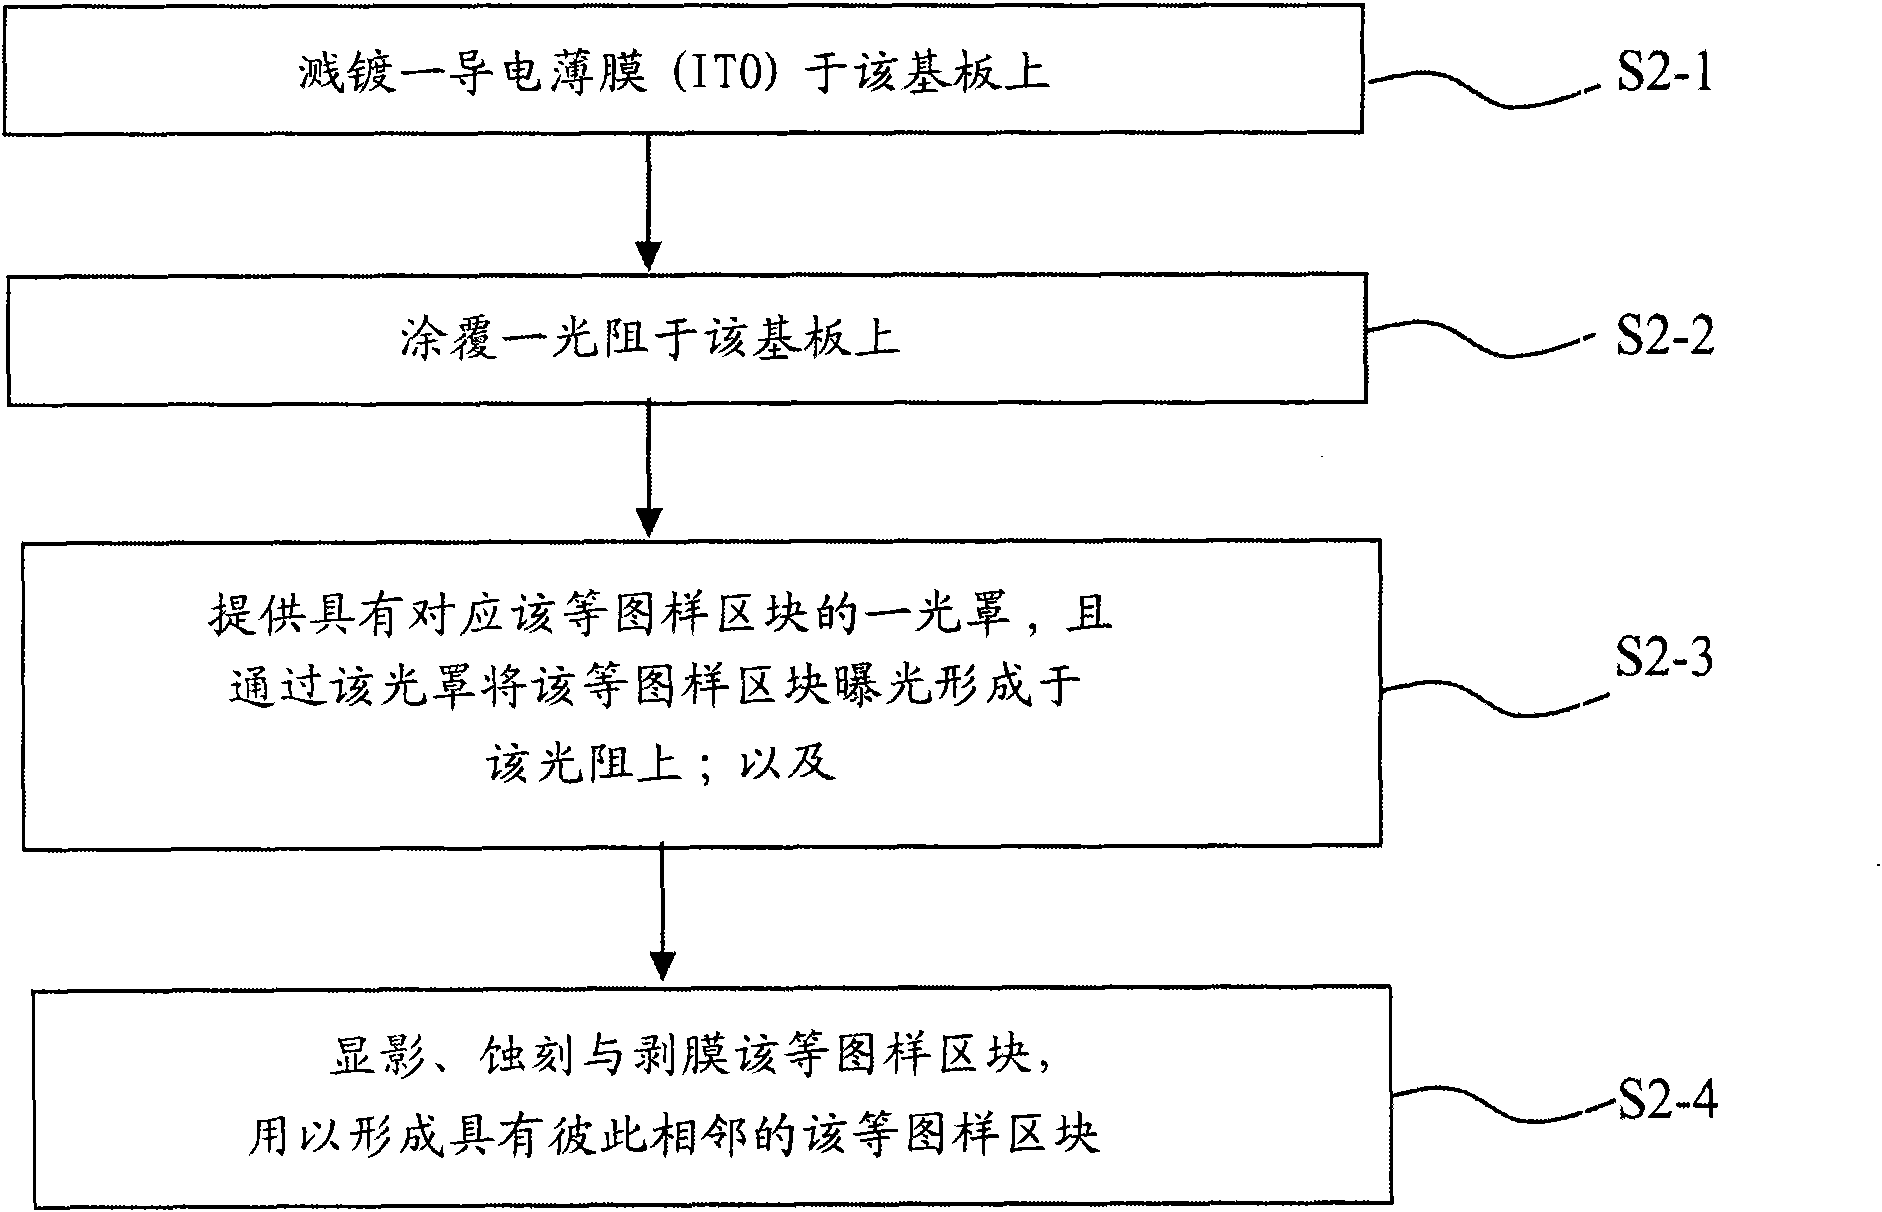 Arrangement method and structure of bridge electrode